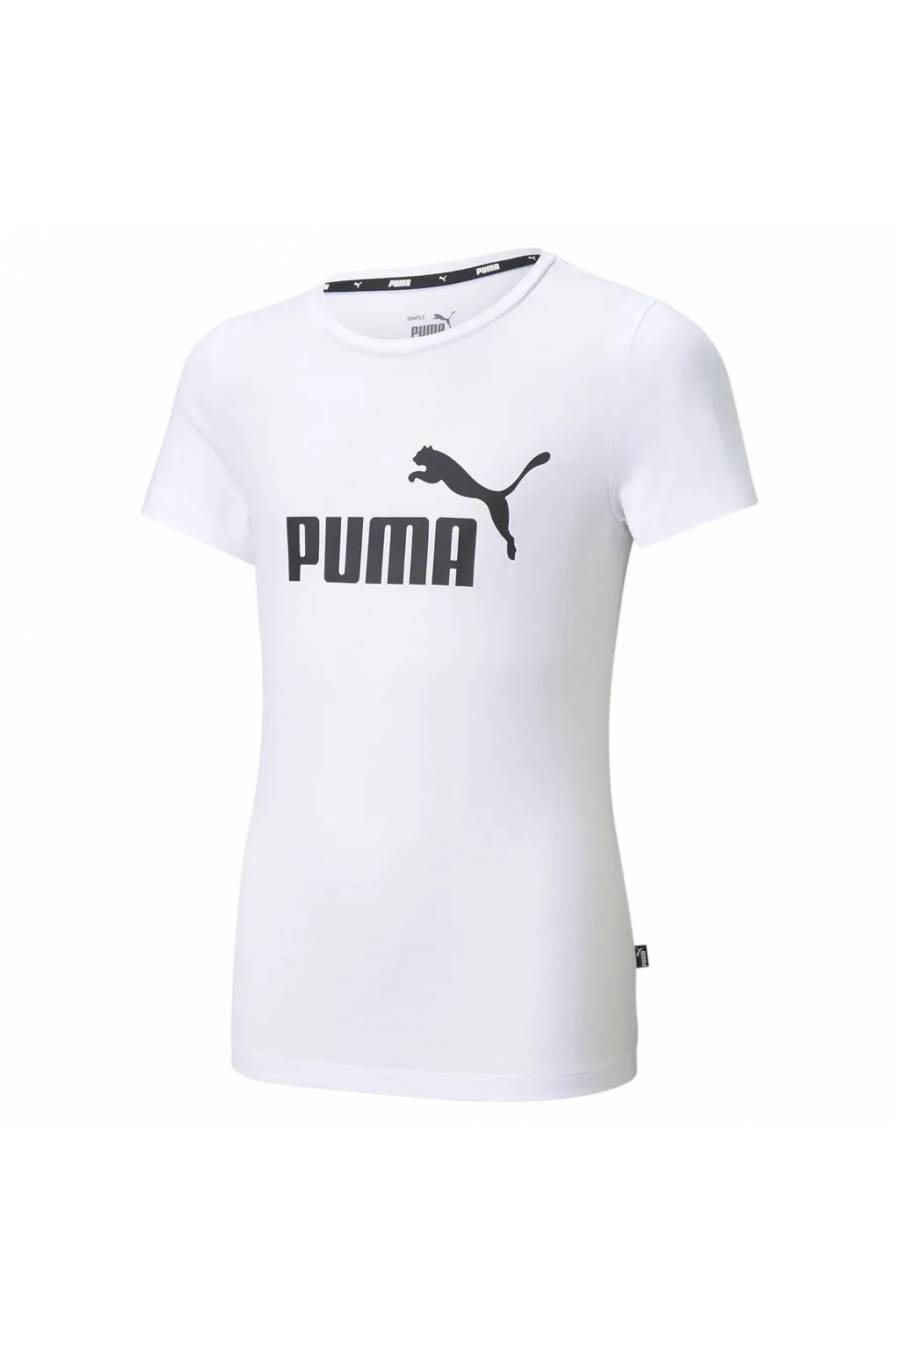 Camiseta Puma Essentials Logo 58702902